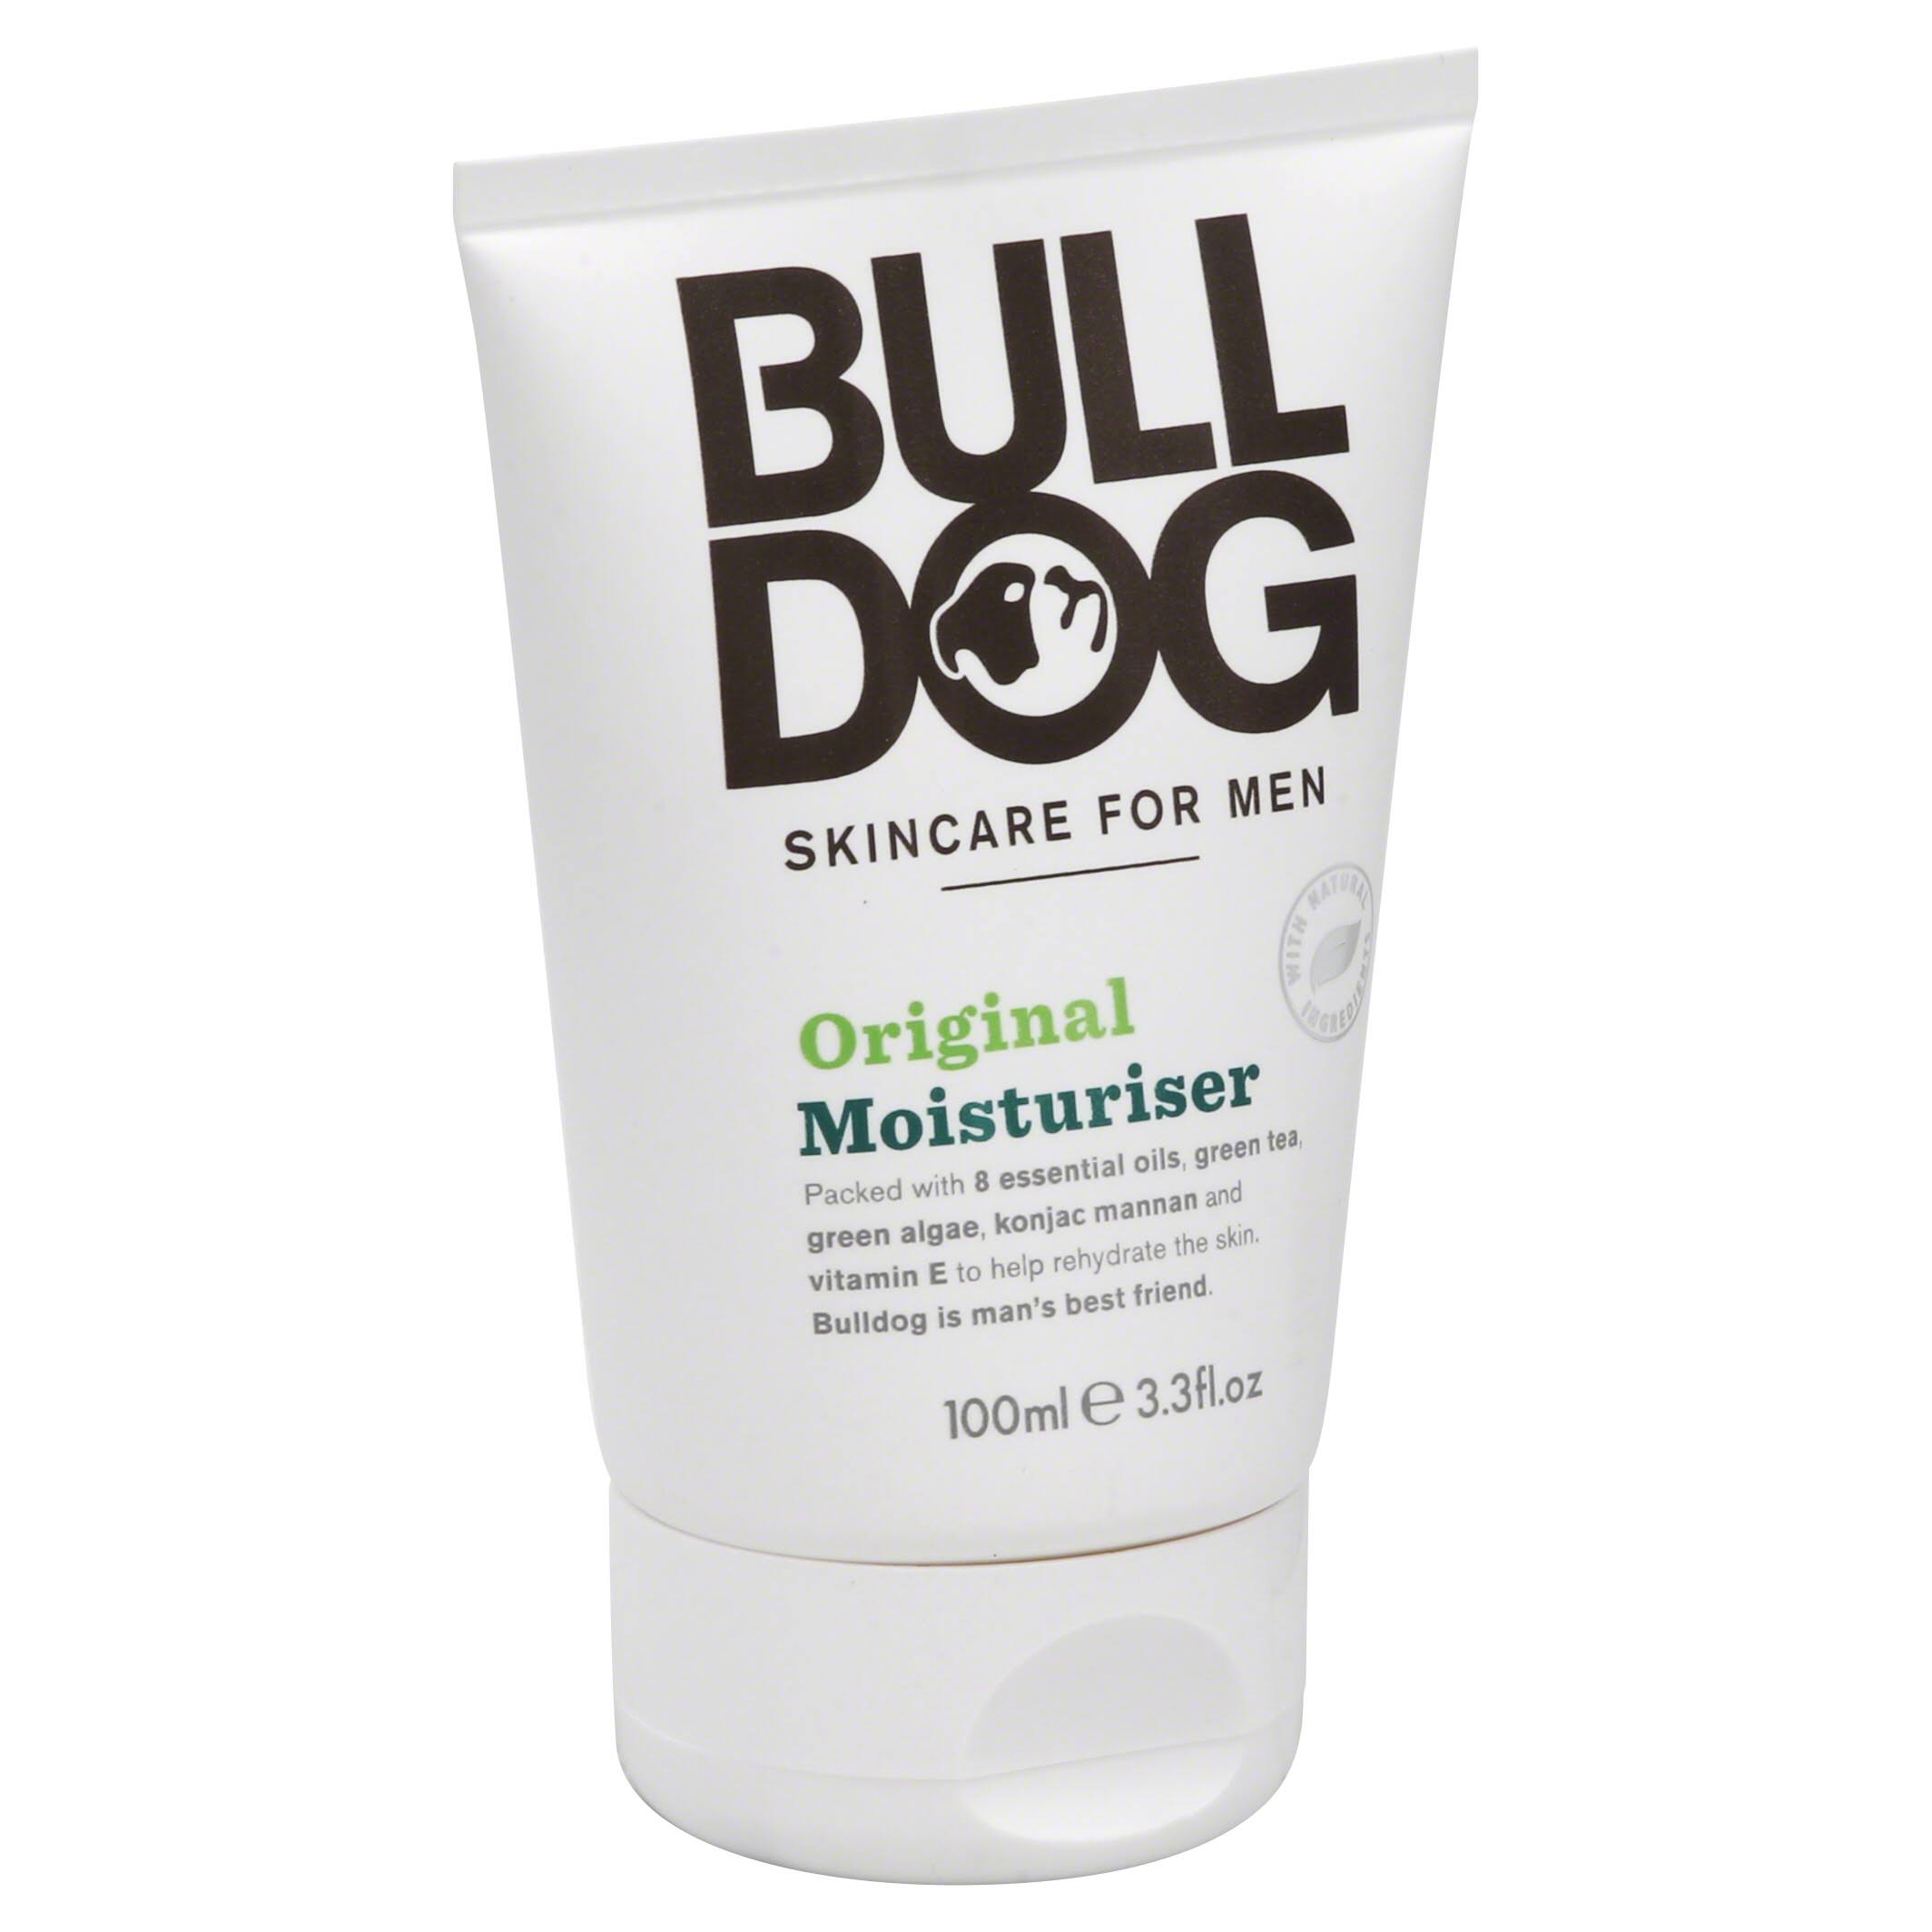 Bull Dog Skincare For Men Original Moisturiser - 100ml